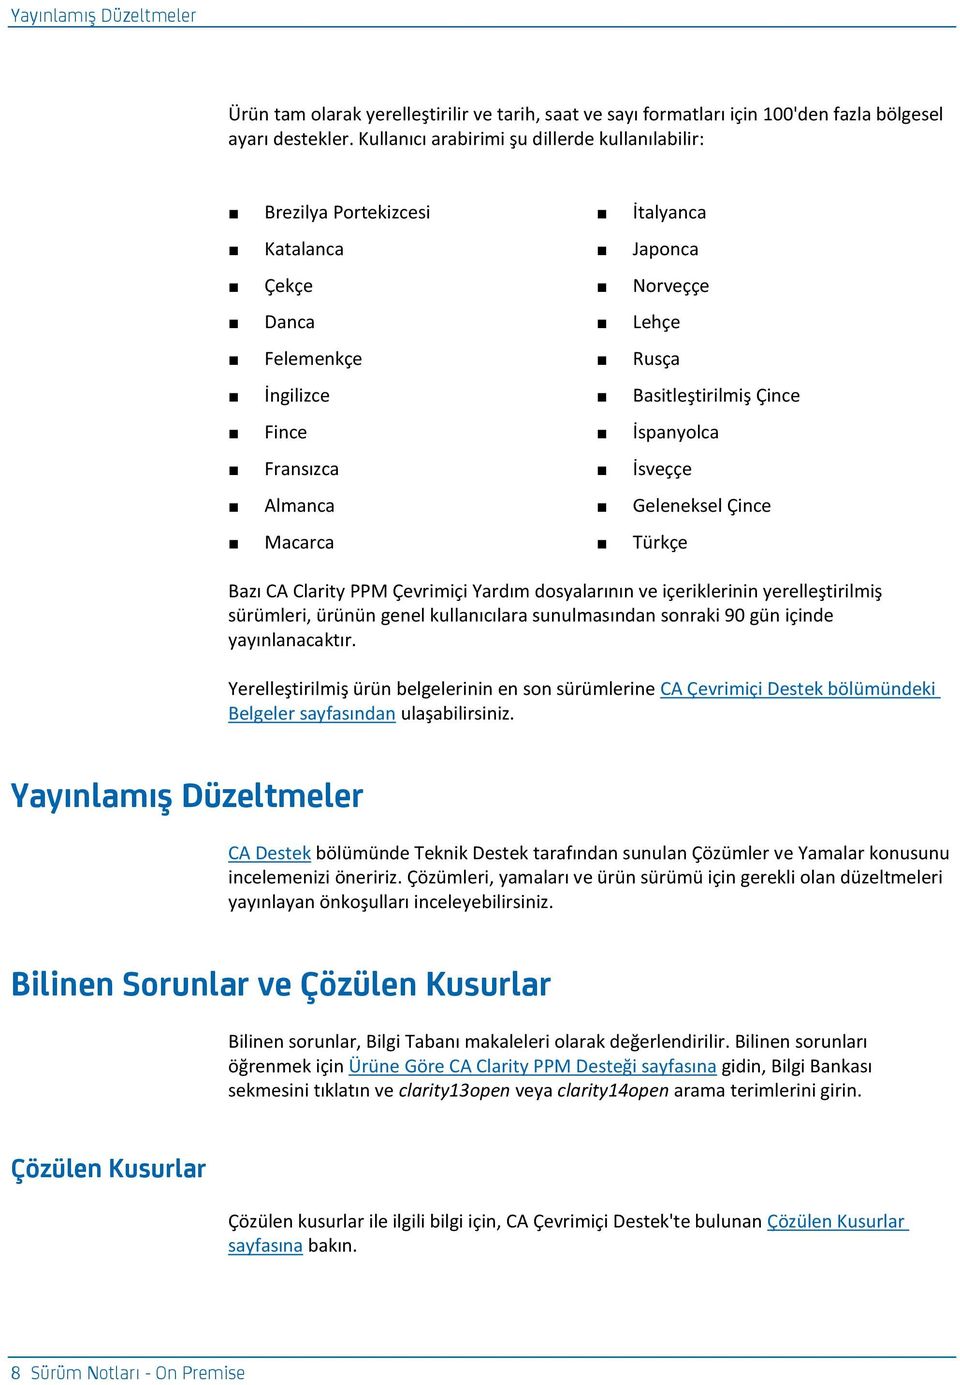 Fransızca İsveççe Almanca Geleneksel Çince Macarca Türkçe Bazı CA Clarity PPM Çevrimiçi Yardım dosyalarının ve içeriklerinin yerelleştirilmiş sürümleri, ürünün genel kullanıcılara sunulmasından